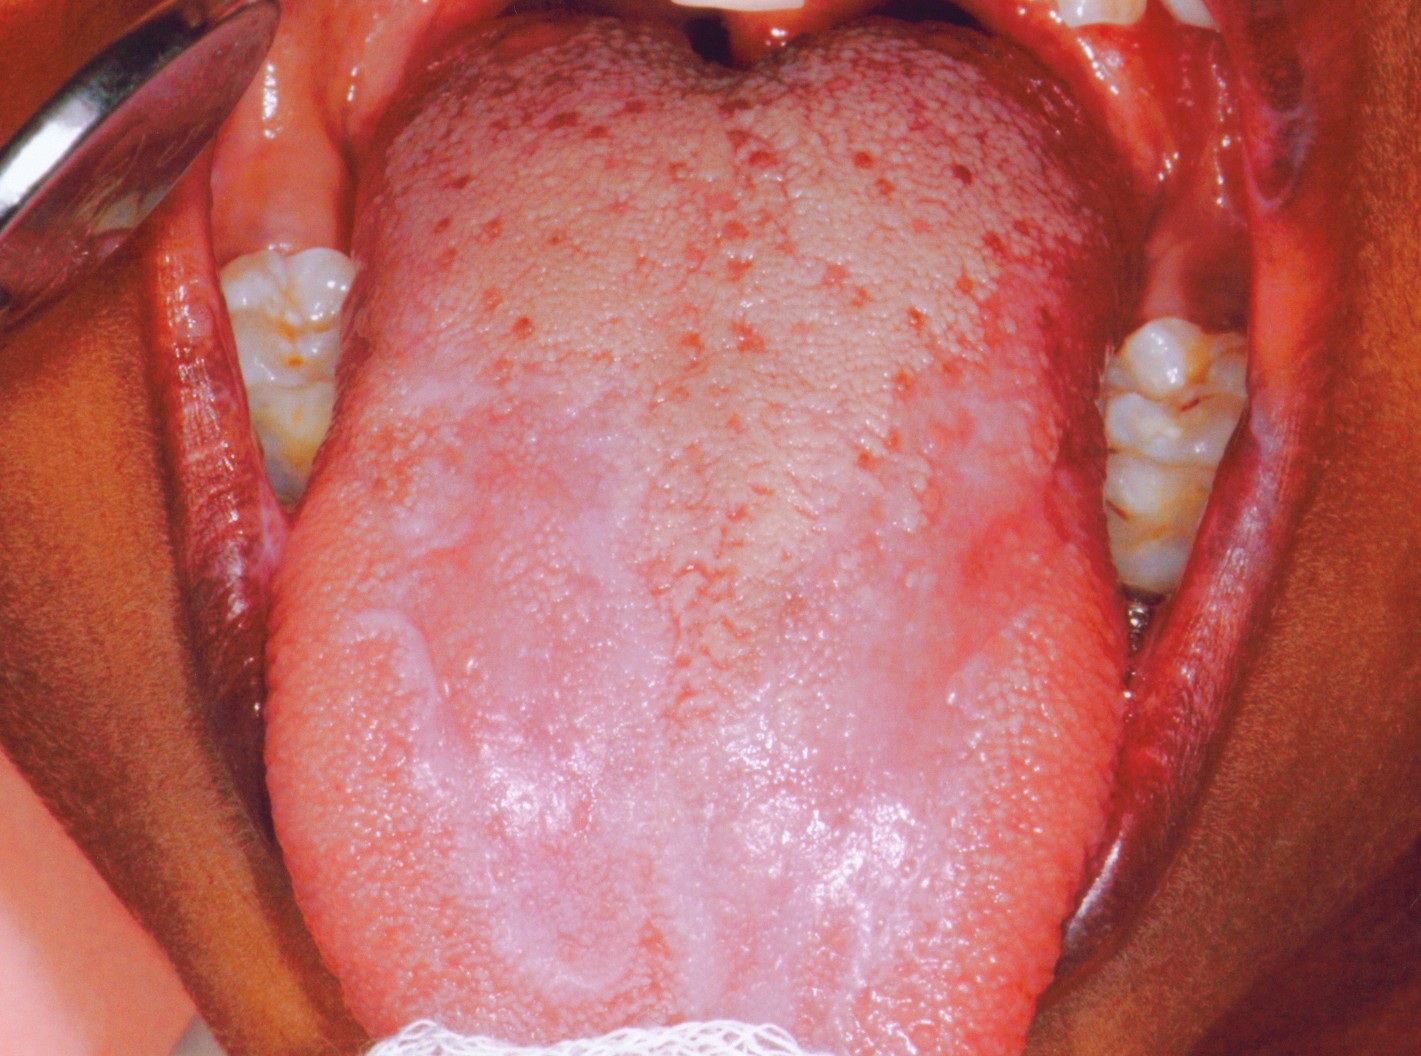 Oral lichen planus Overview - Mayo Clinic